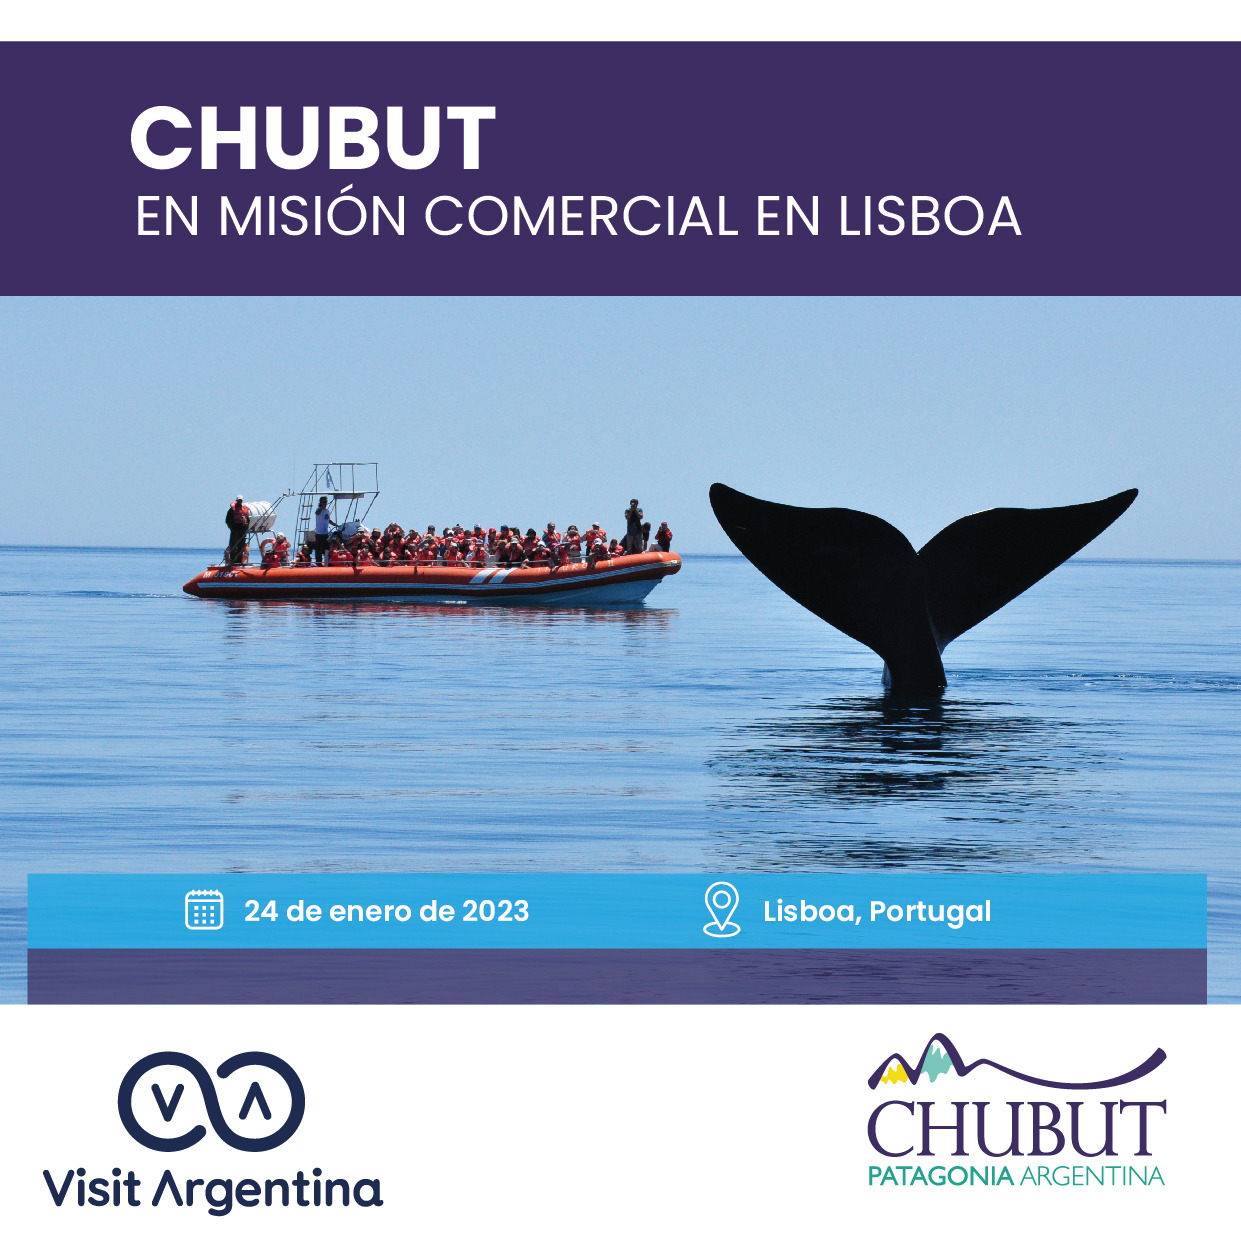 Chubut potencia sus destinos turísticos en encuentro comercial desarrollado en Portugal